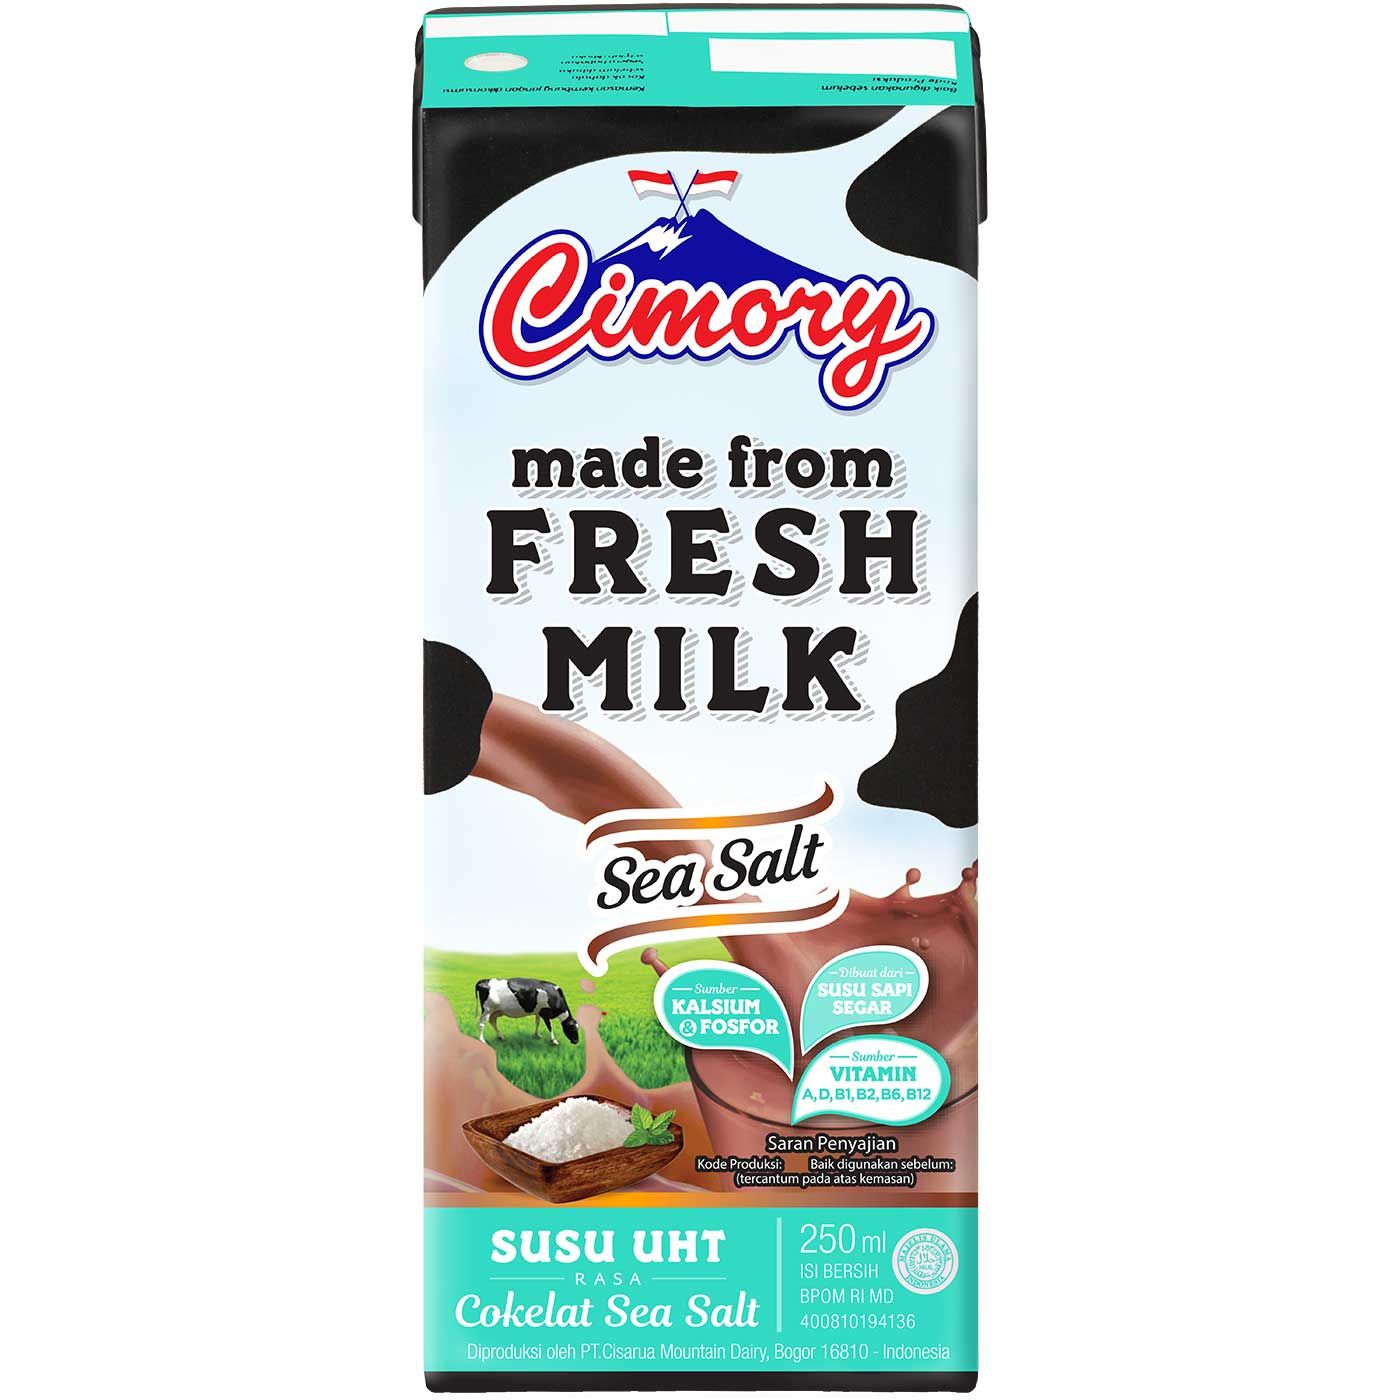 Cimory Uht Milk Sea Salt 250ml  - 1